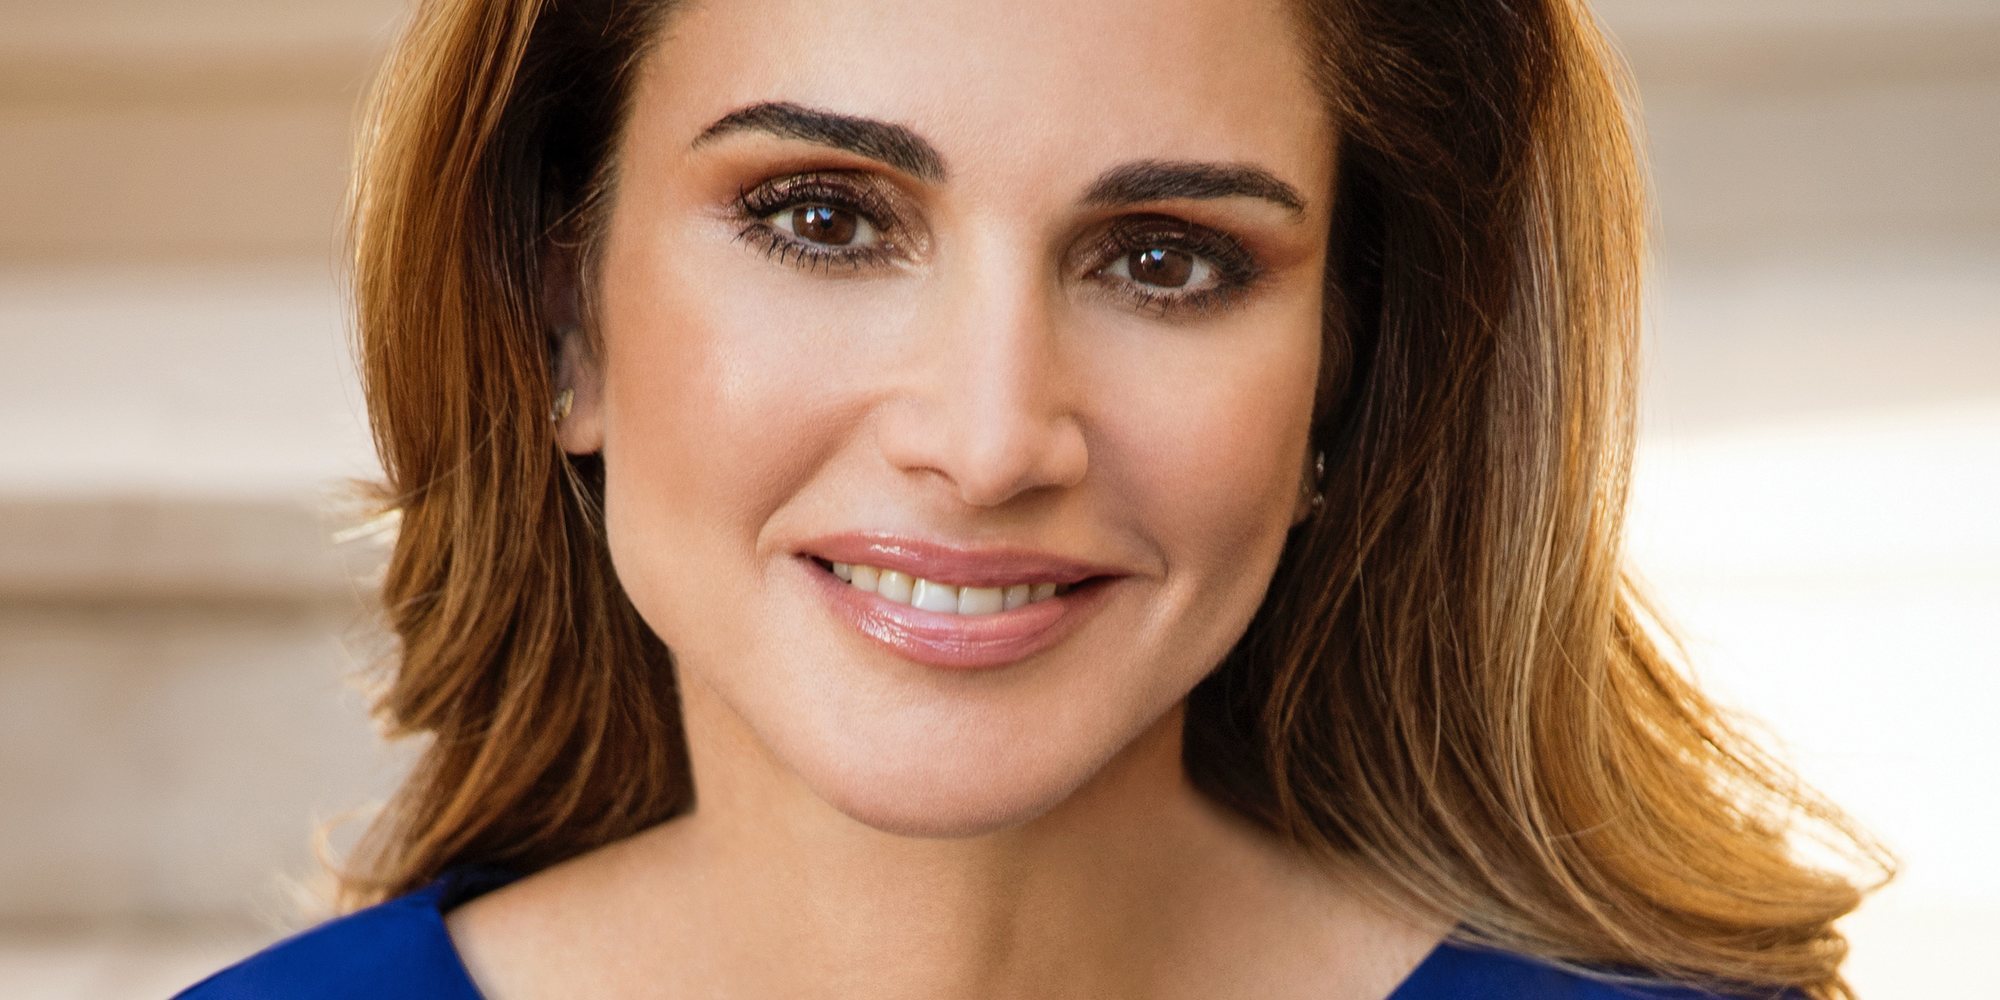 La Reina Rania de Jordania estrena retratos para festejar su 49 cumpleaños